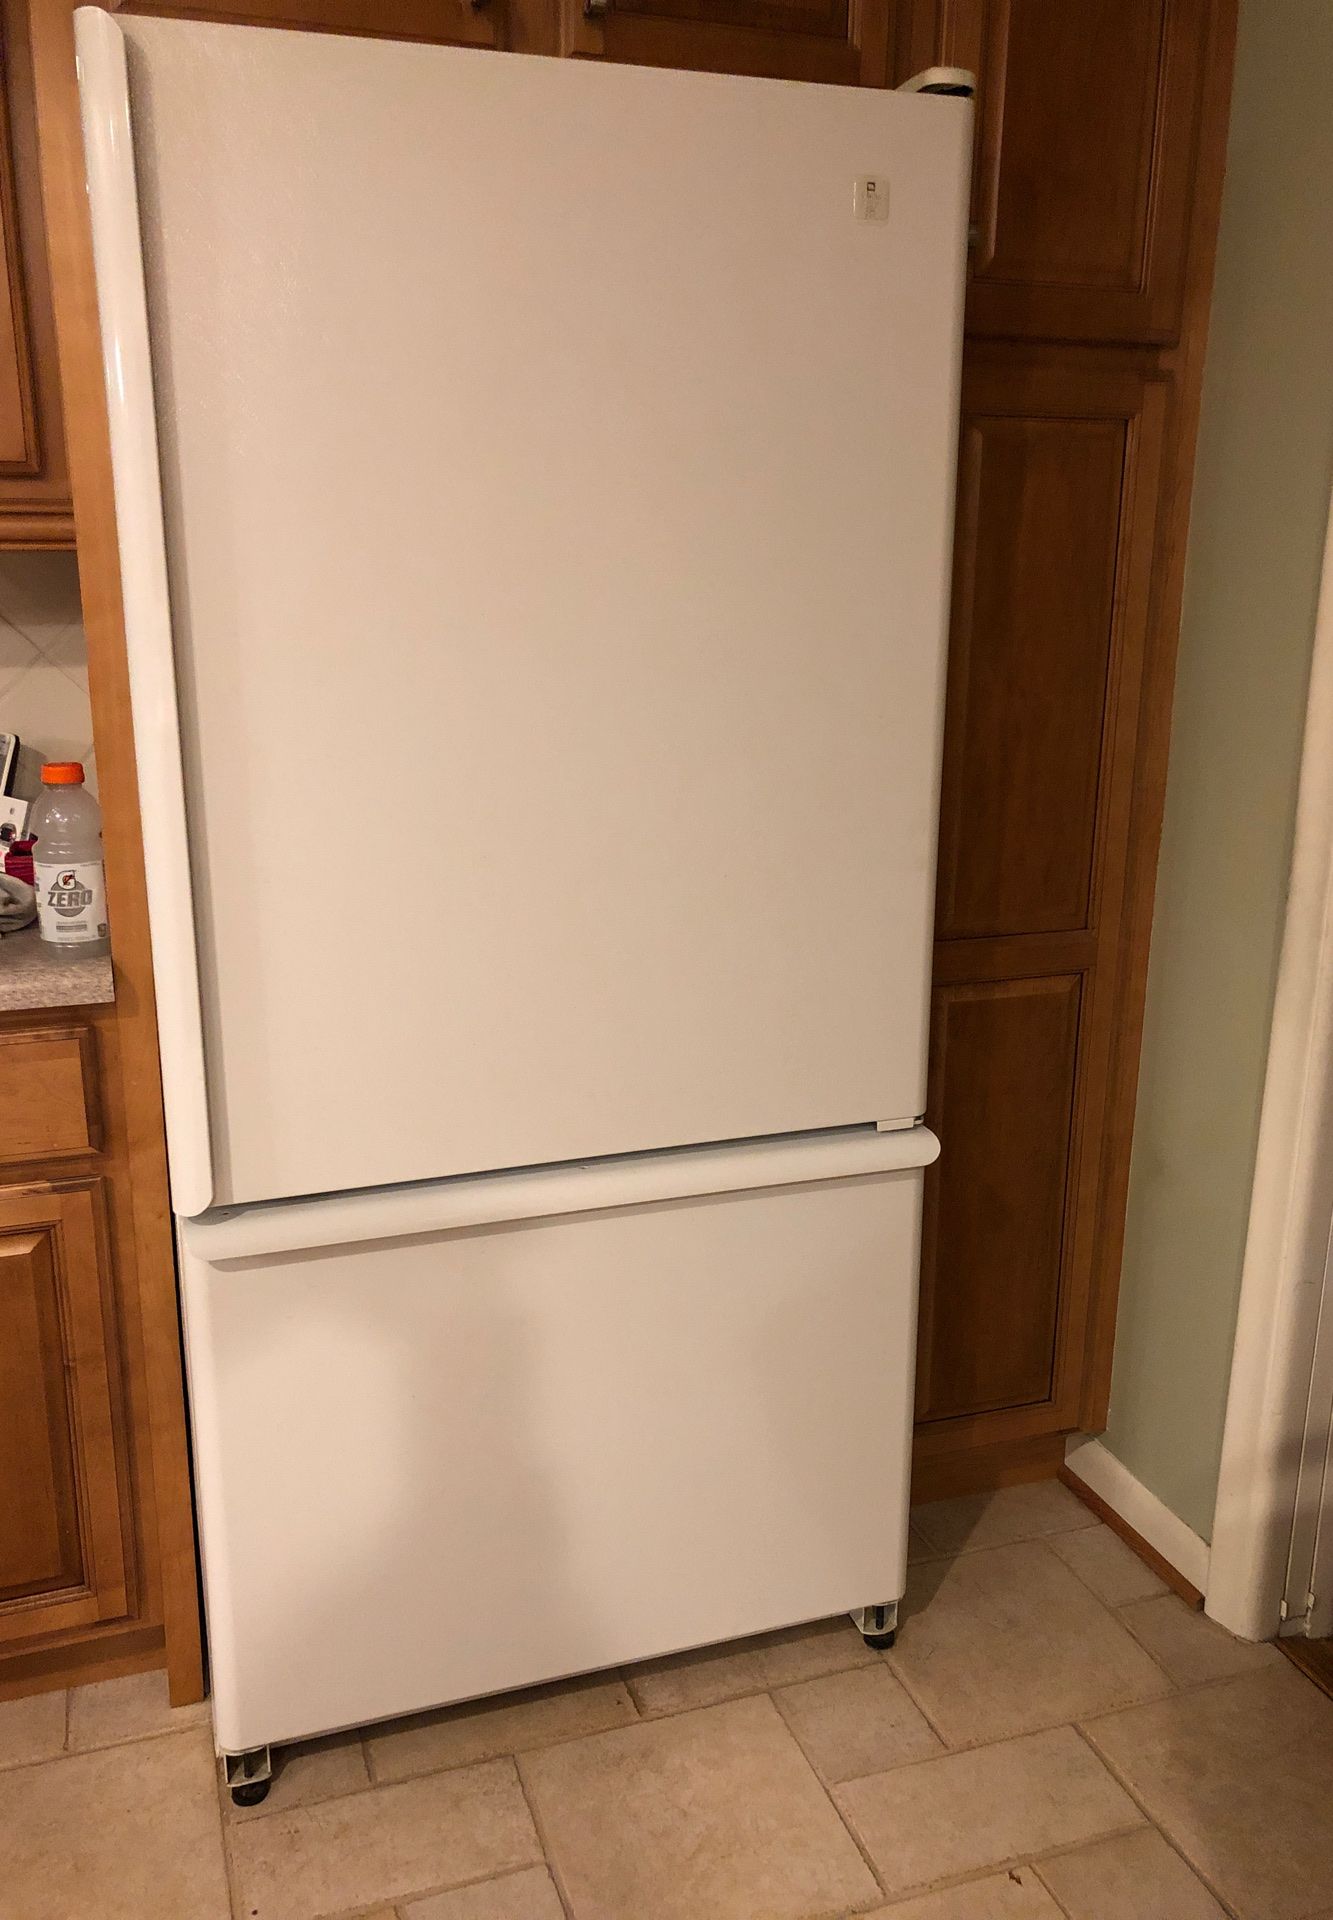 Maytag plus refrigerator